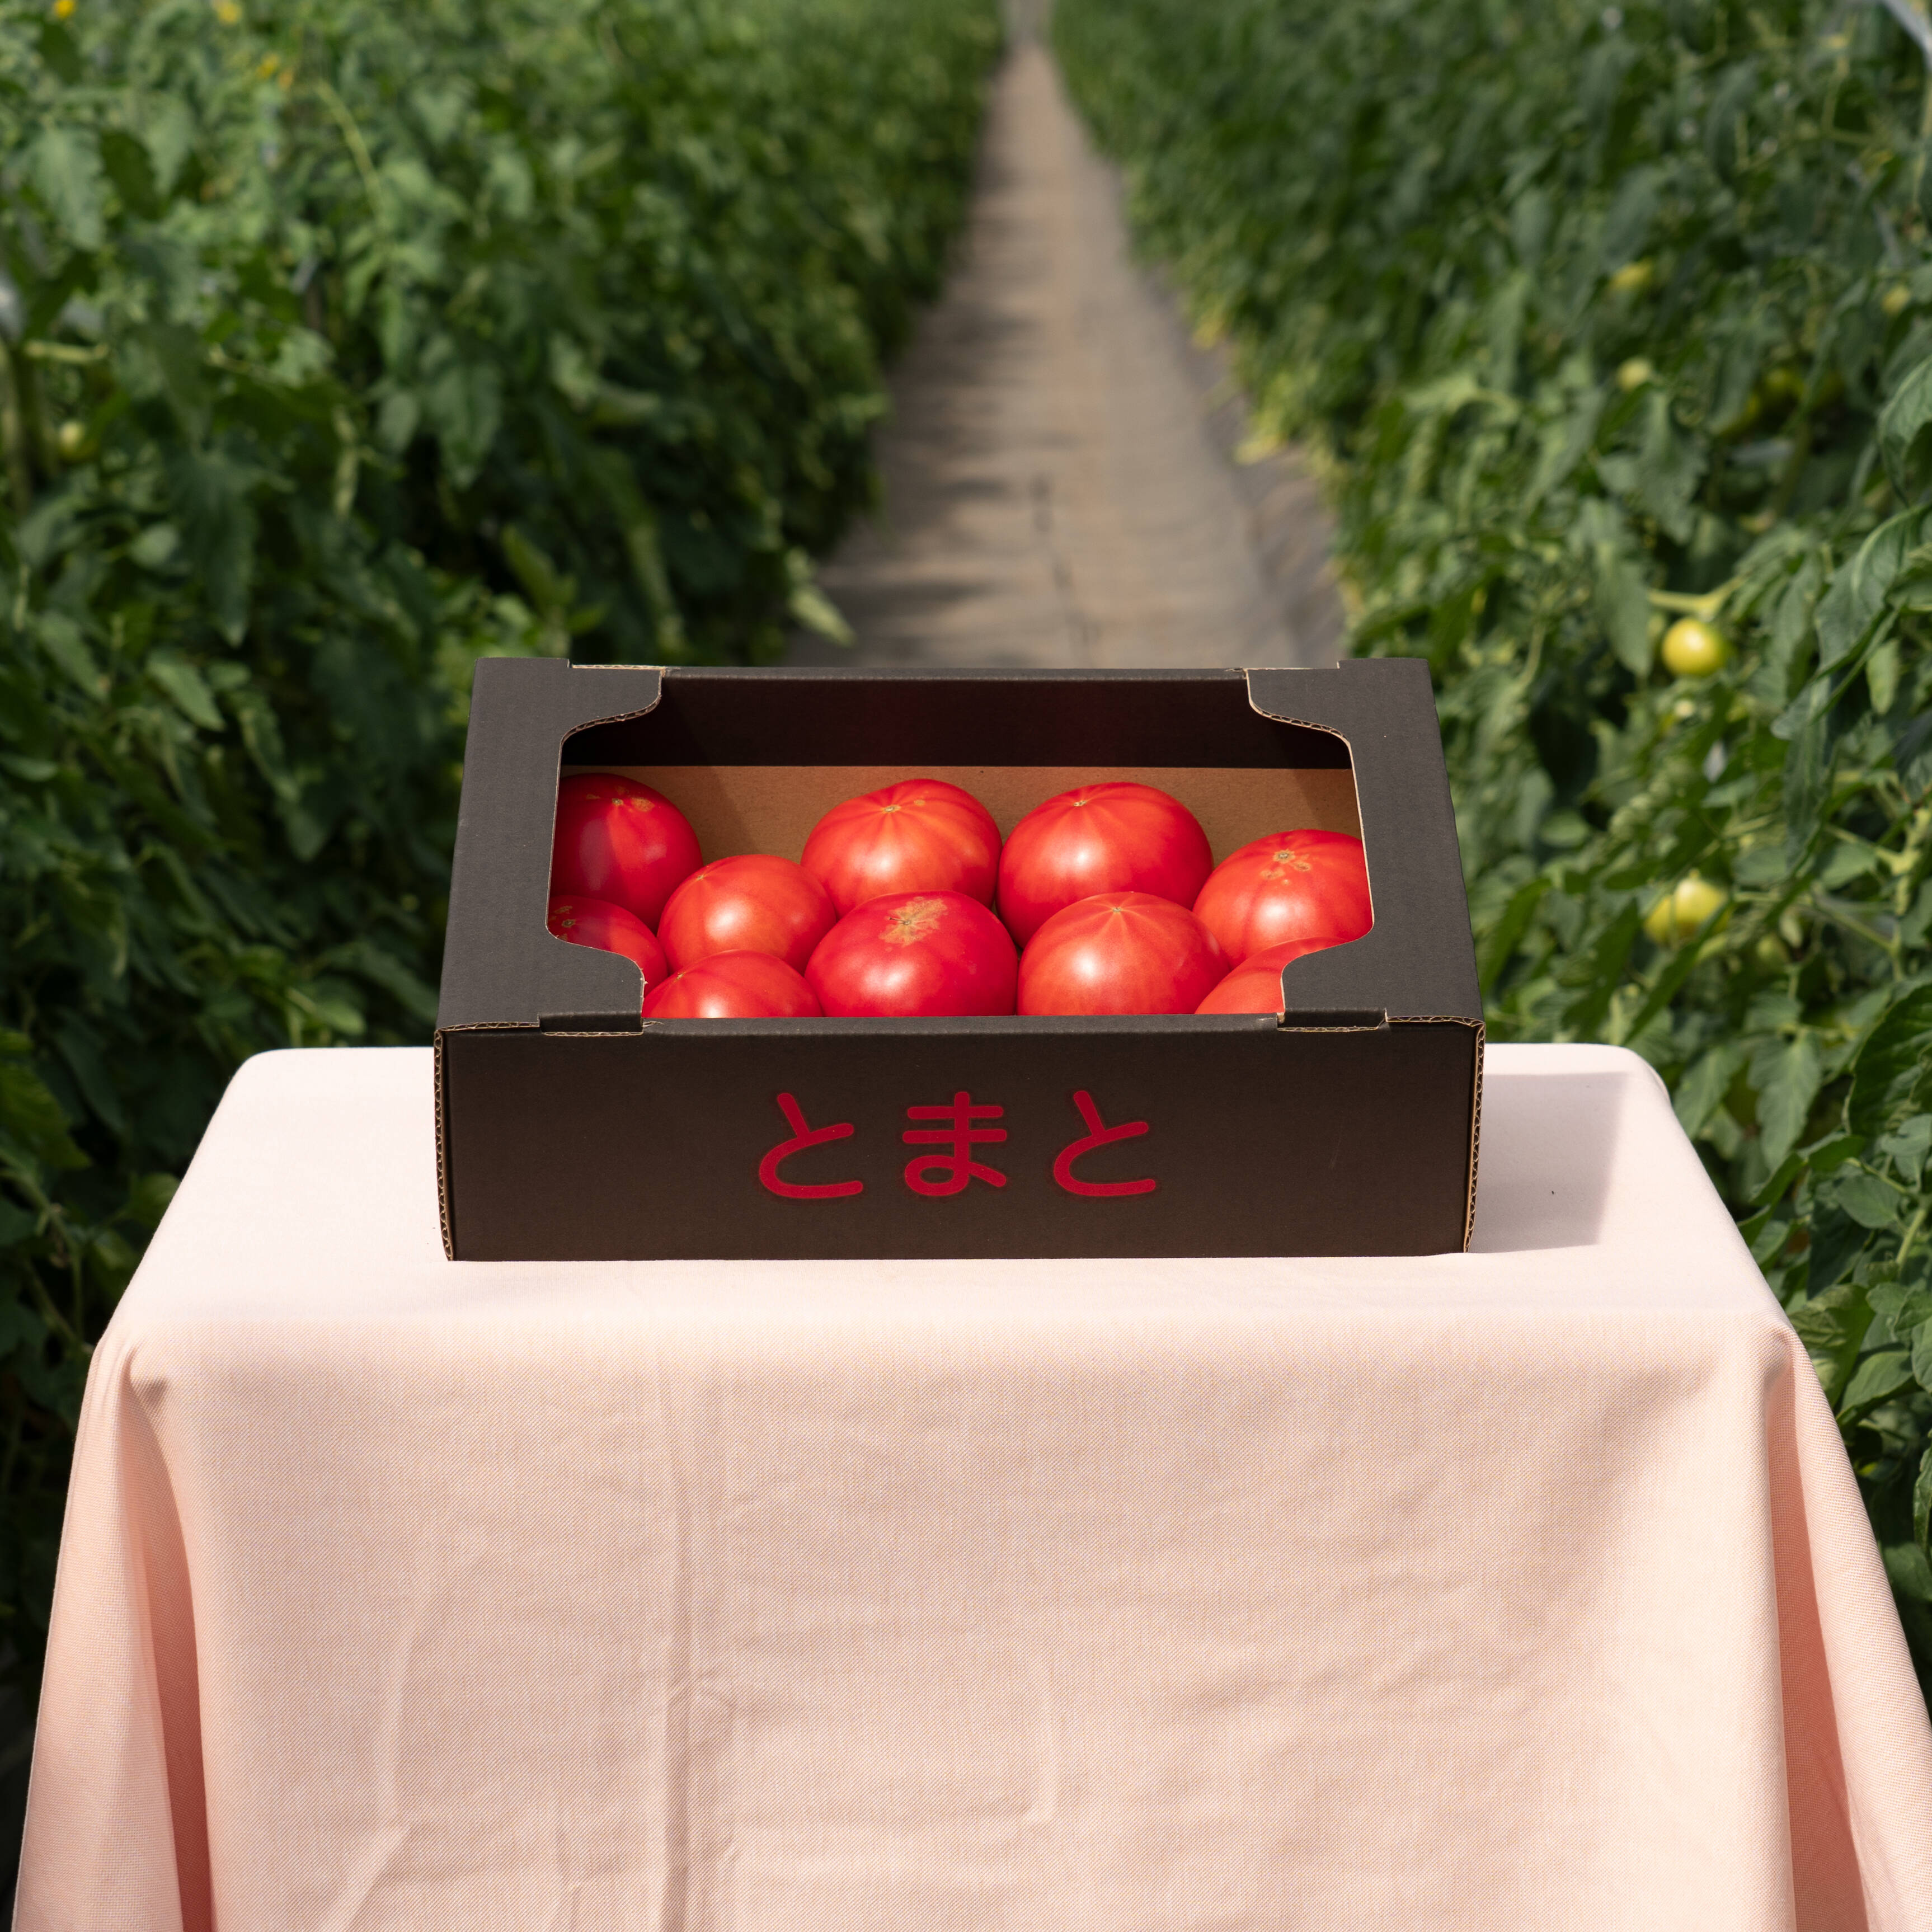 【北海道産】🍅樹上熟3段採り🍅桃太郎トマト 〈訳あり〉2kg箱